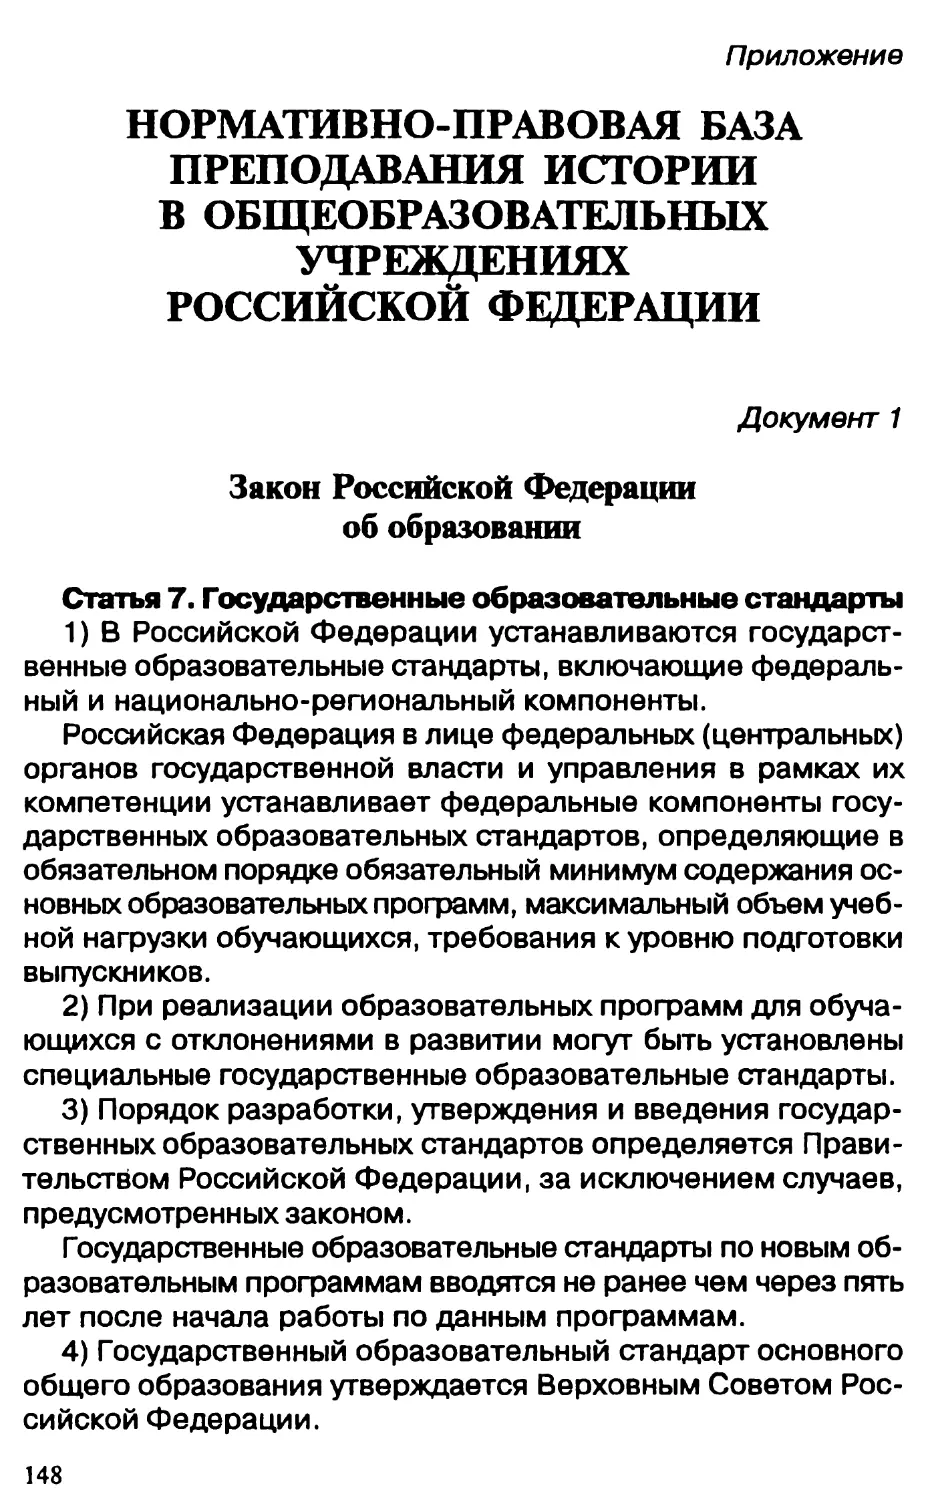 Приложение. Нормативно-правовая база преподавания истории в общеобразовательных учреждениях Российской Федерации